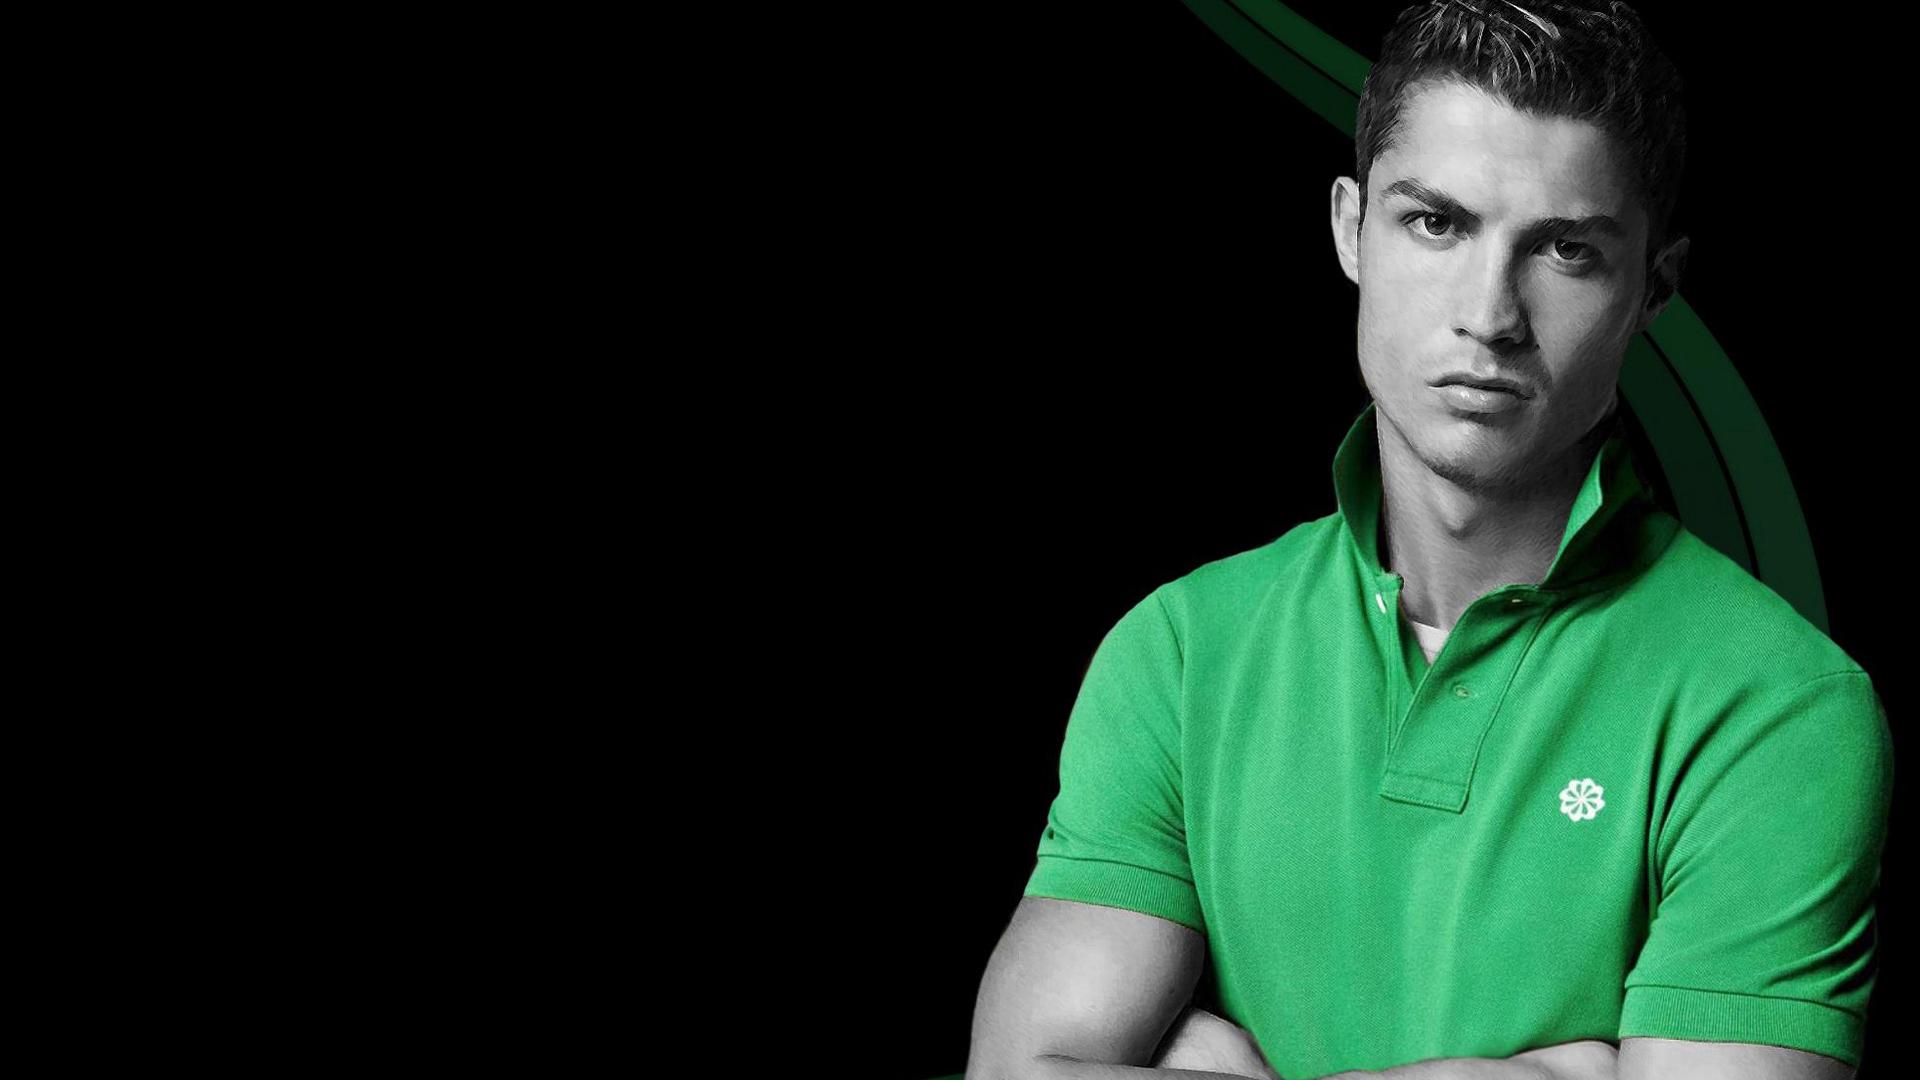 Cristiano Ronaldo Wallpaper. HD Cristiano Ronaldo Wallpaper